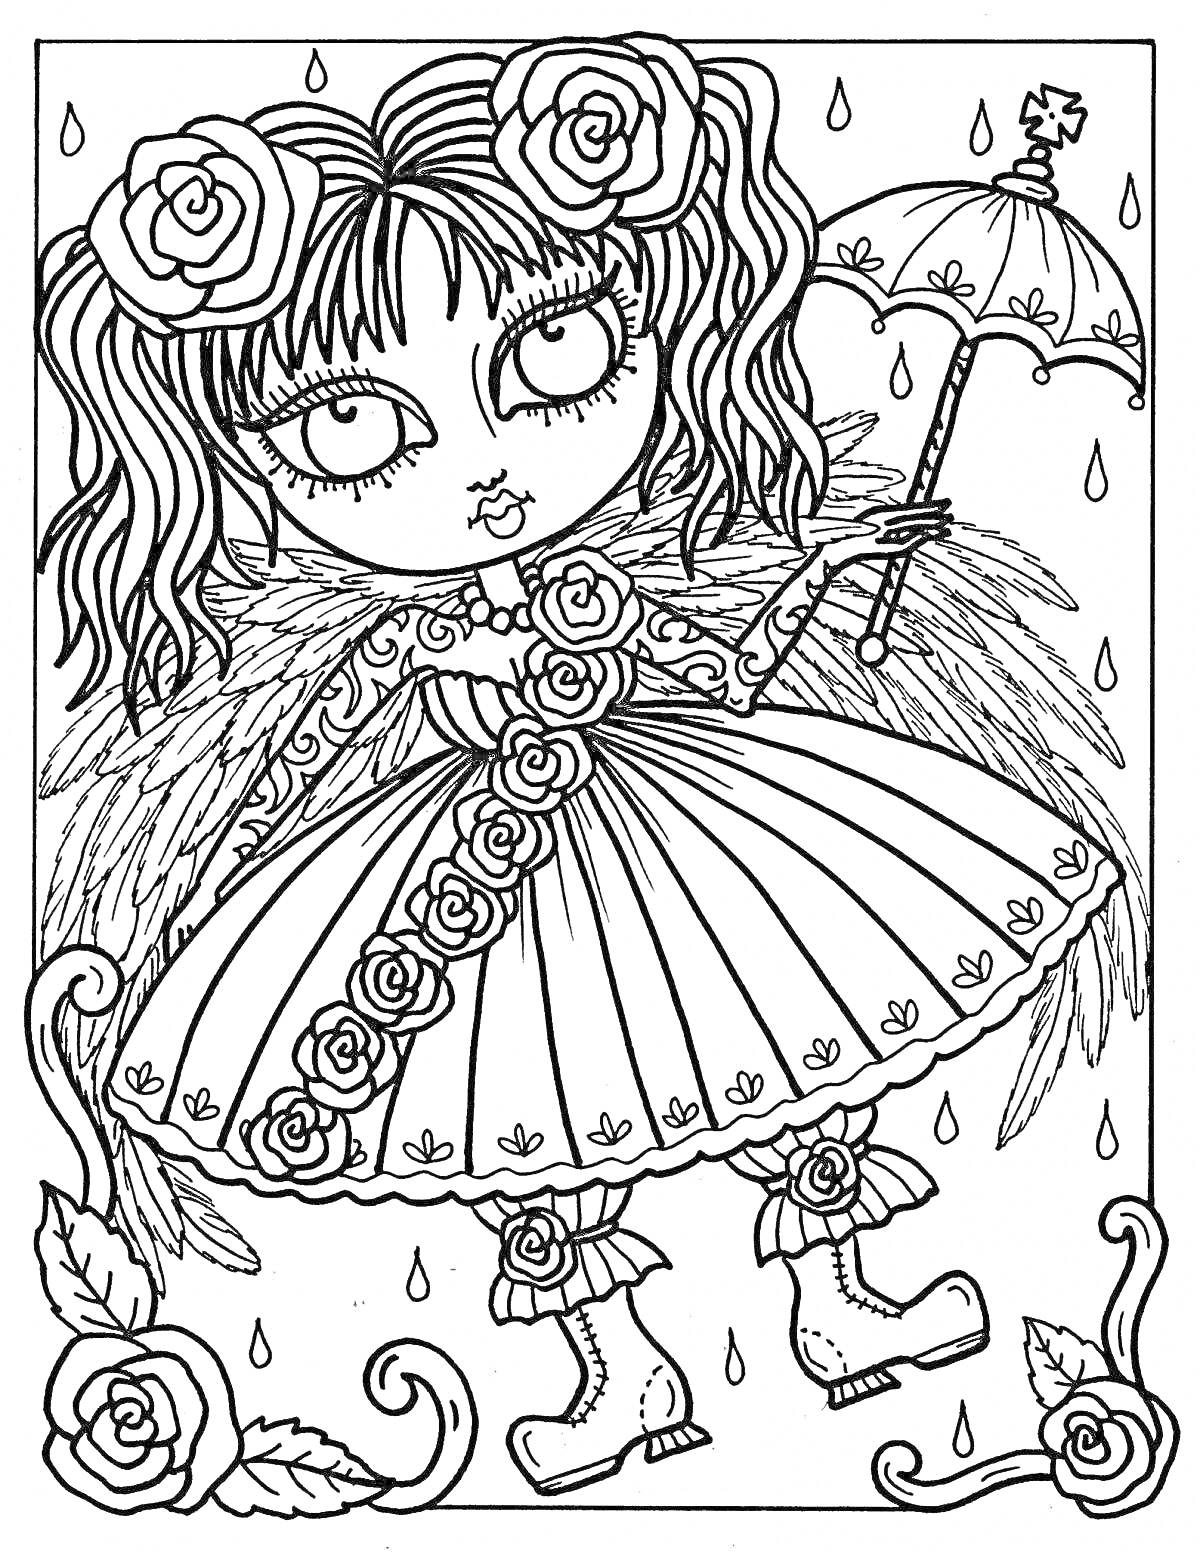 Раскраска Девочка с розами и зонтом под дождем, с крыльями и на фоне капель дождя